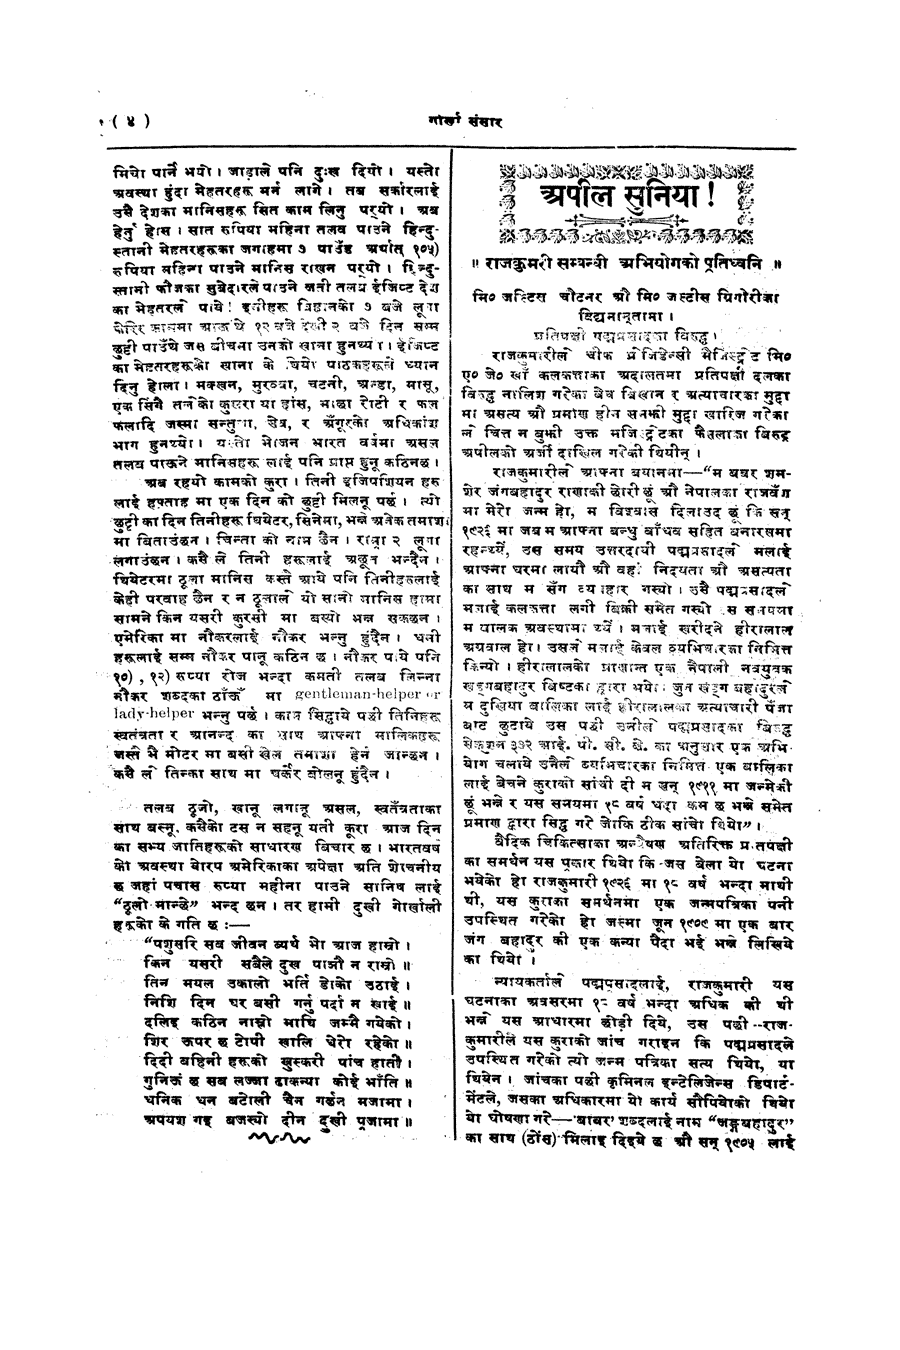 Gorkha Sansar, 14 Feb 1928, page 4